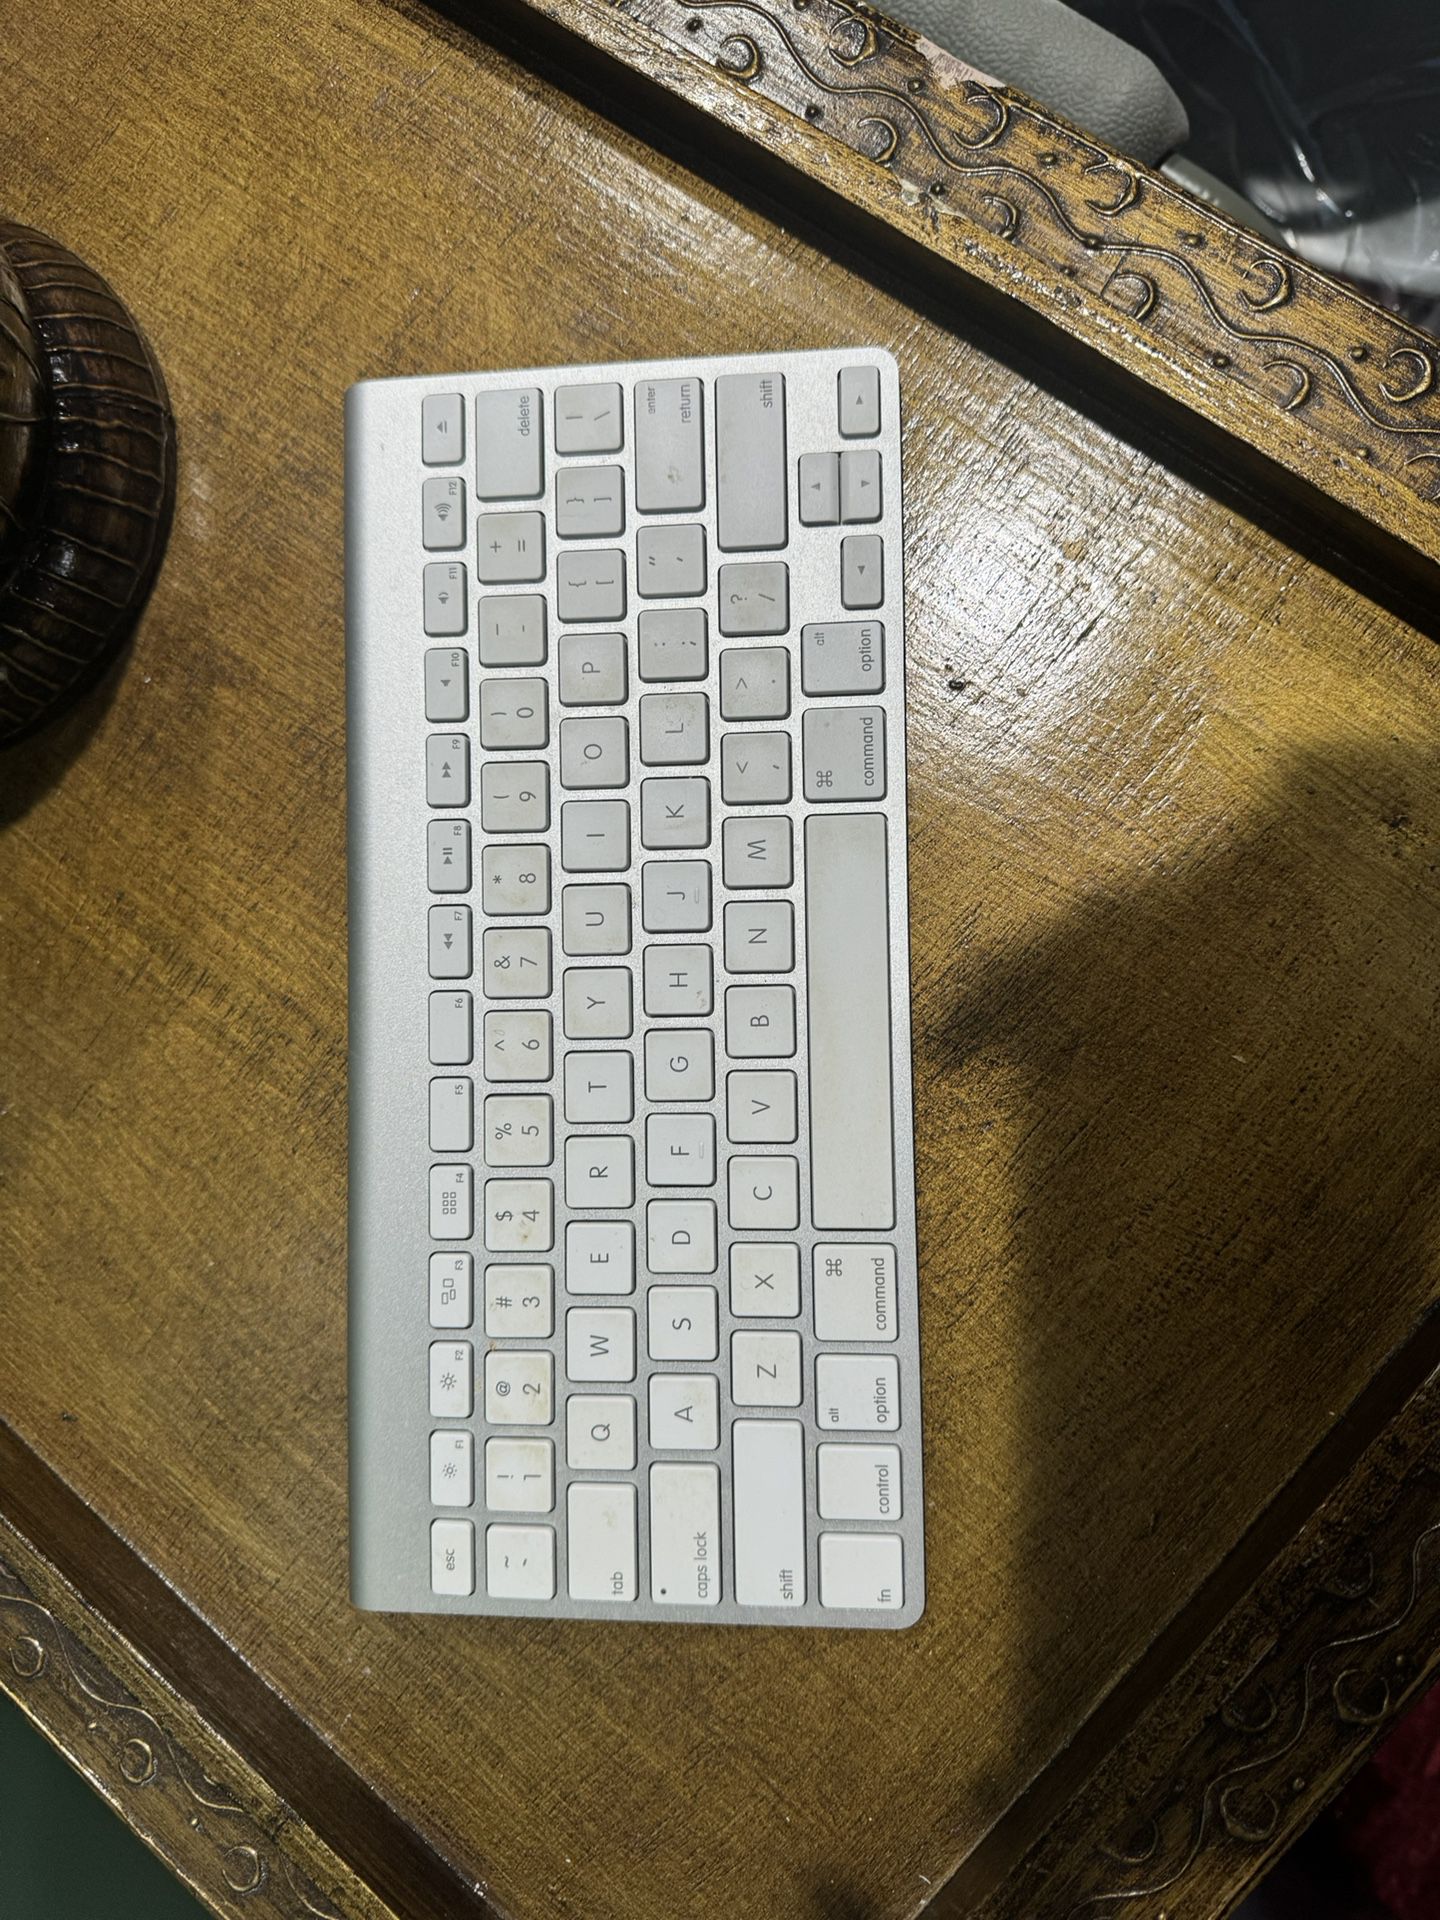 Apple Wireless Keyboard Used .